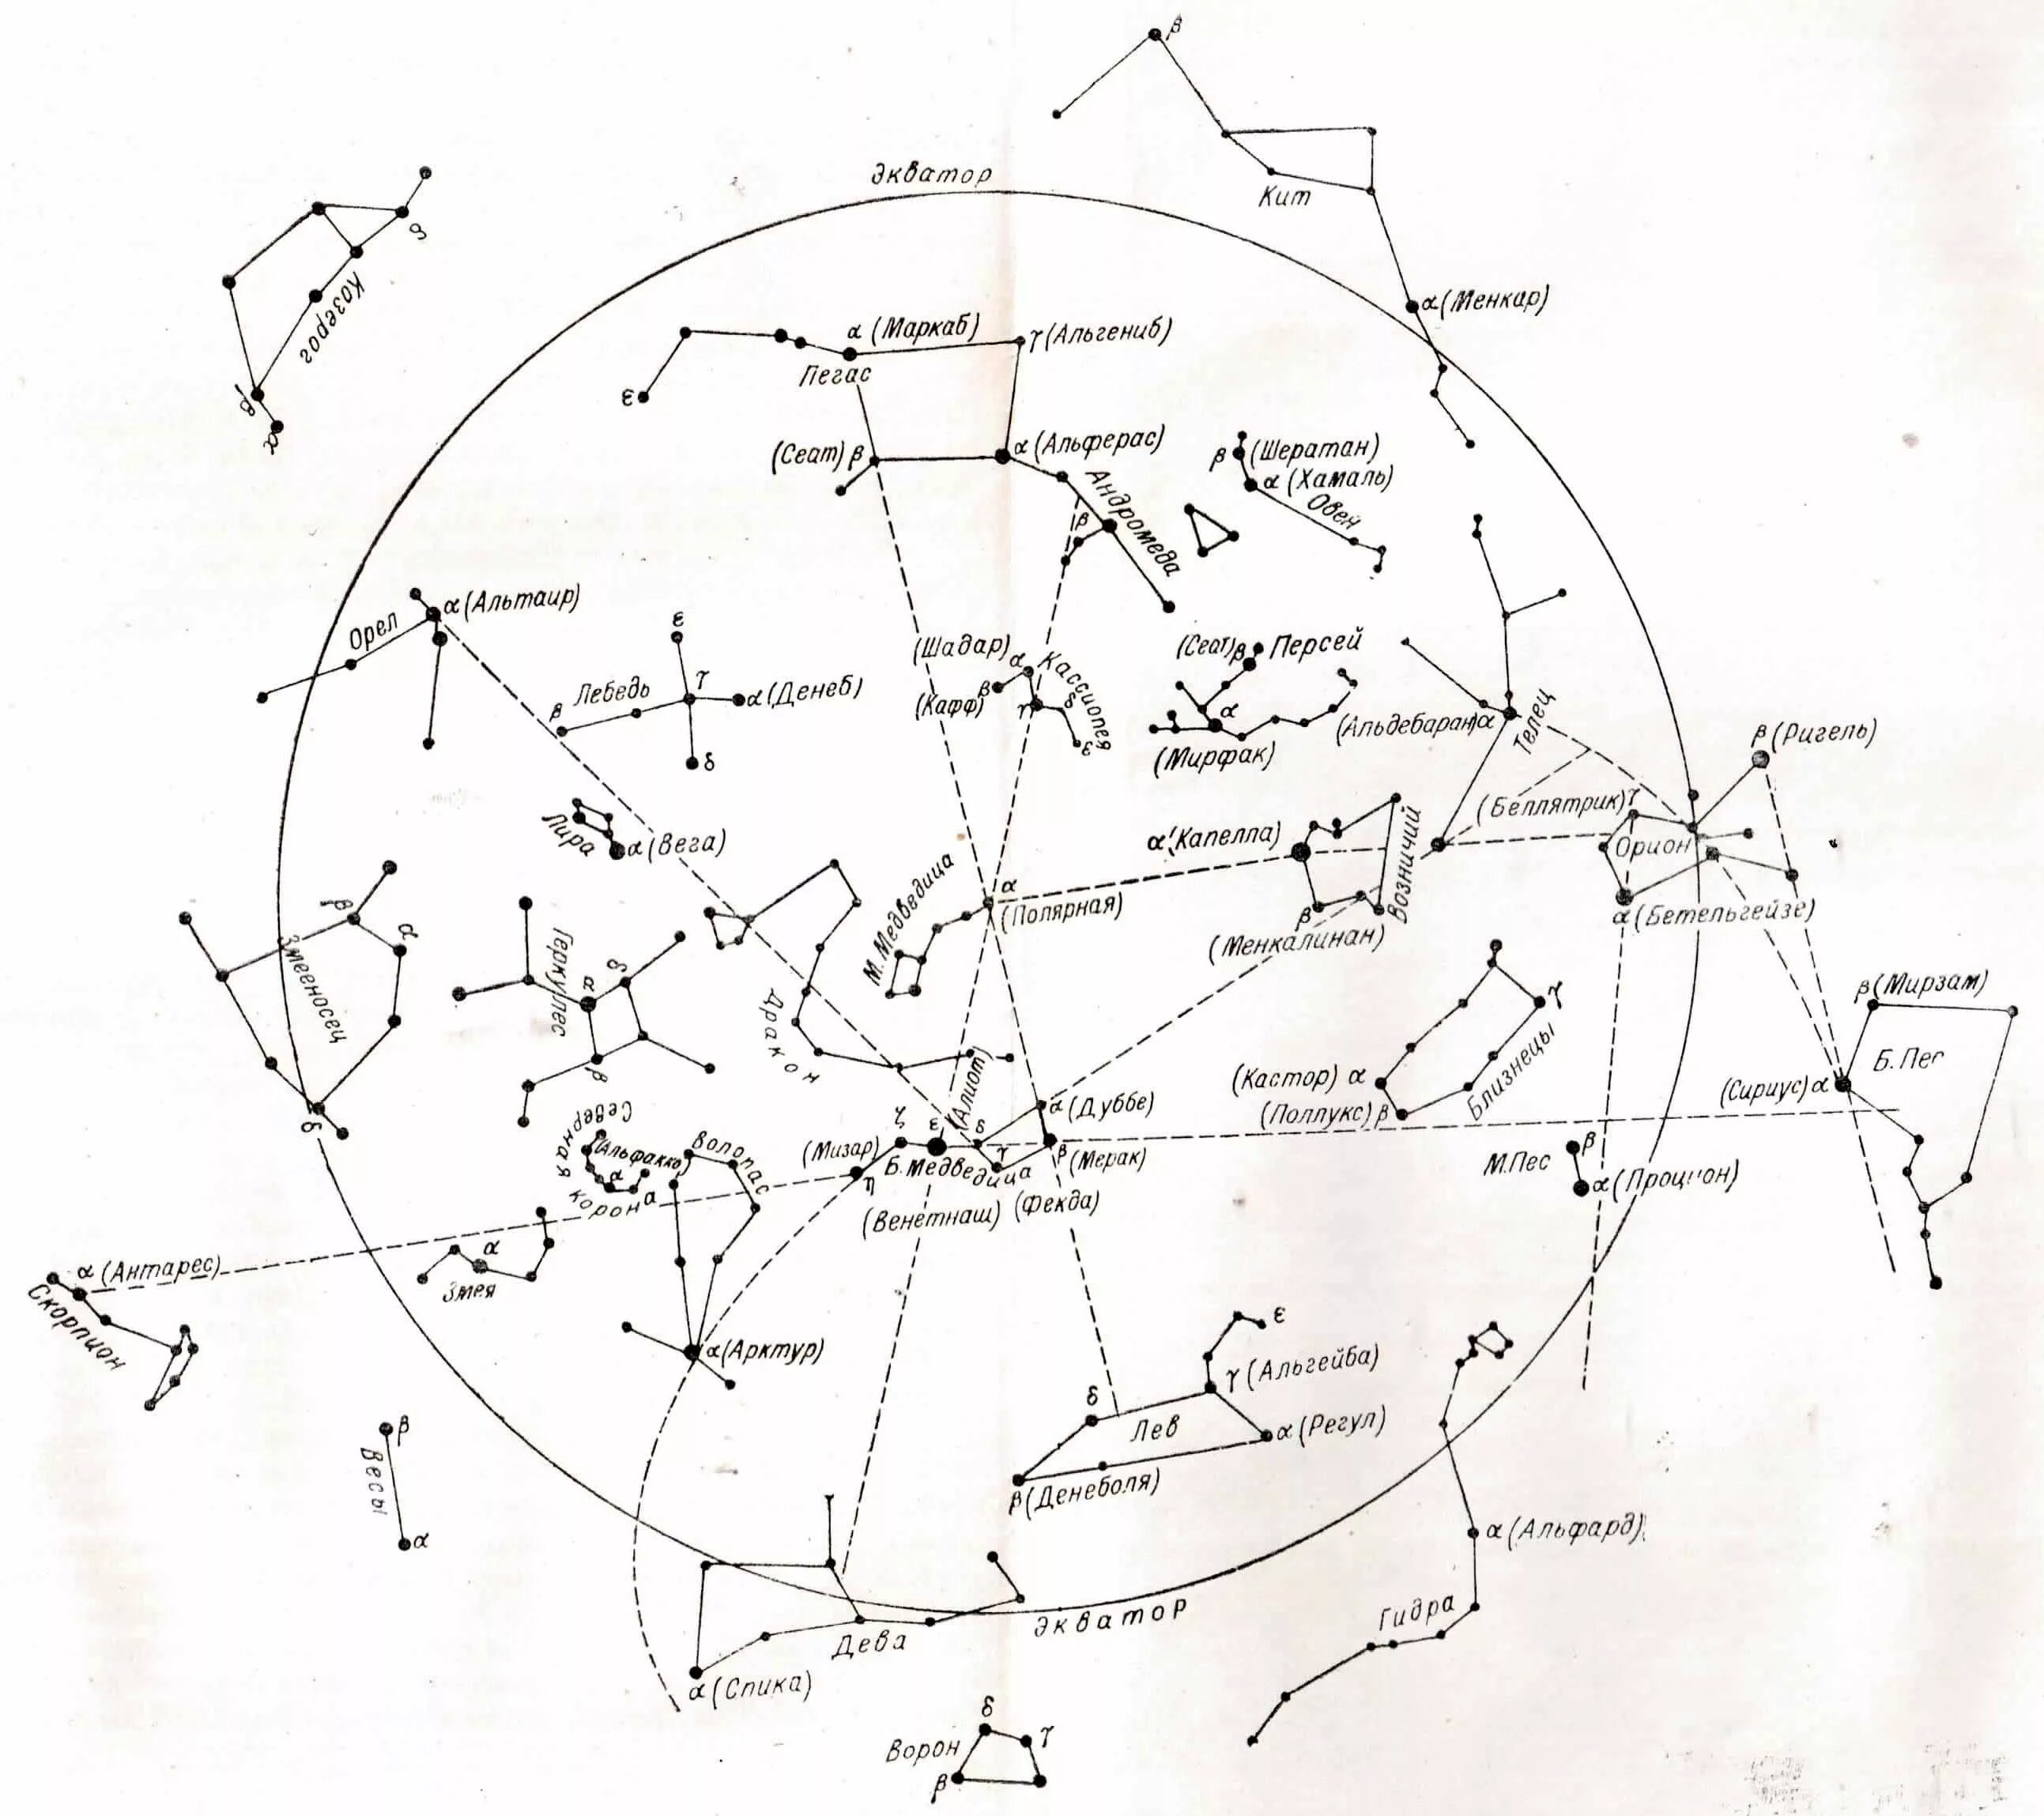 Созвездие жертвенник на карте звездного неба. Карта звездного неба с названиями звезд Северного полушария. Звездная карта созвездия. Сириус на карте звездного неба Северного полушария. Сколько выделяют созвездий